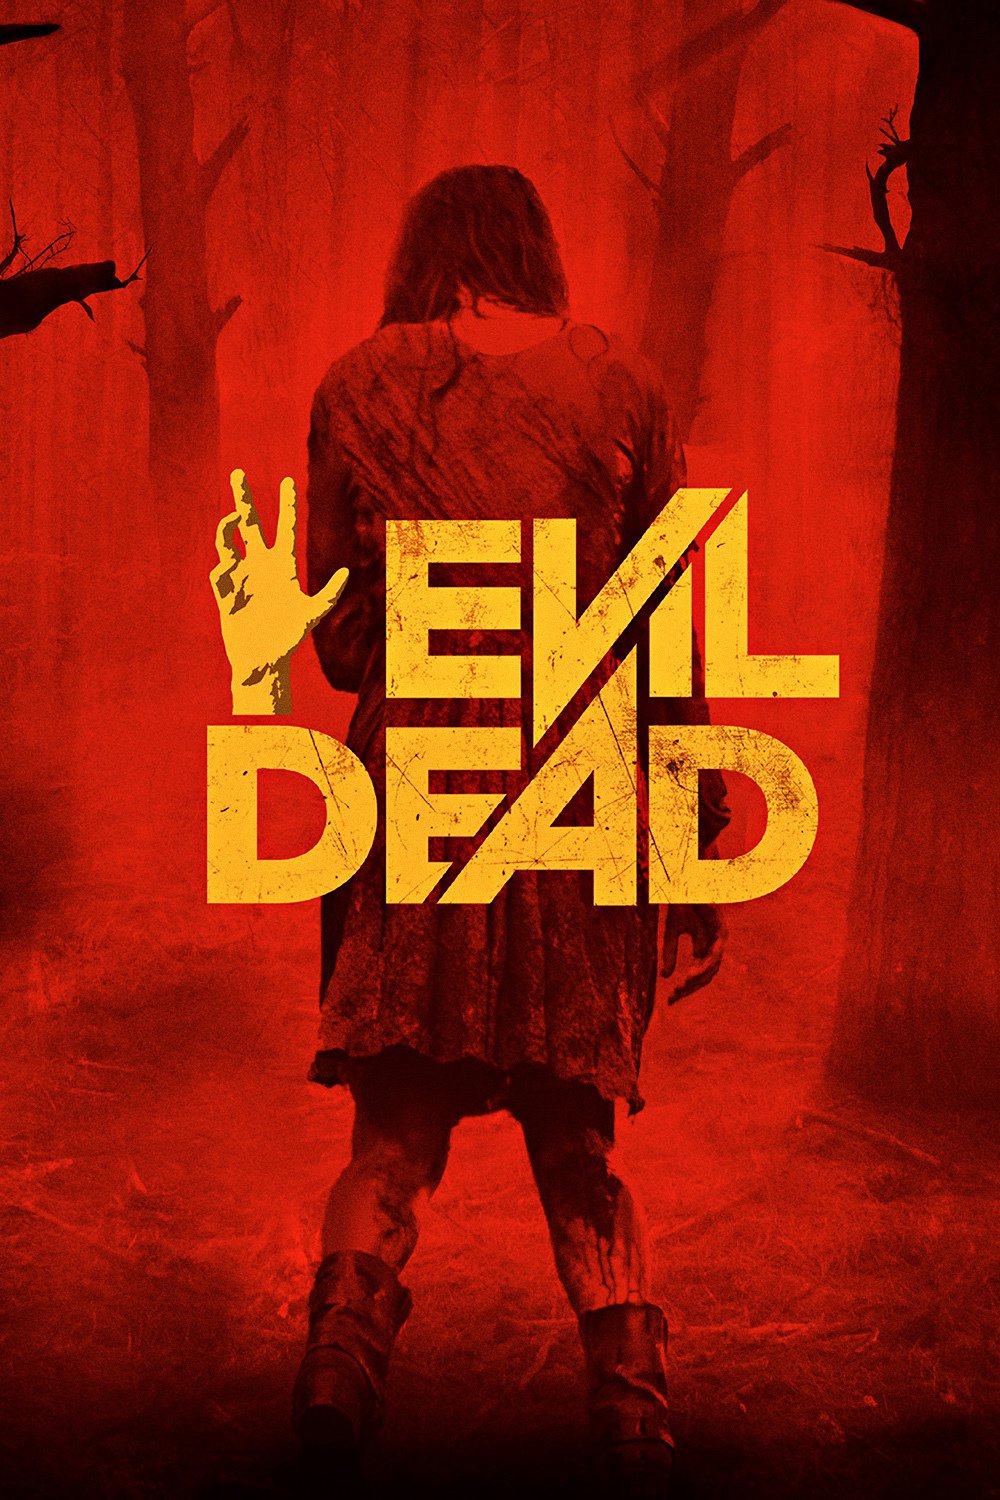 The Abandoned Evil Dead 4 Plot Sounds Amazing - vrogue.co